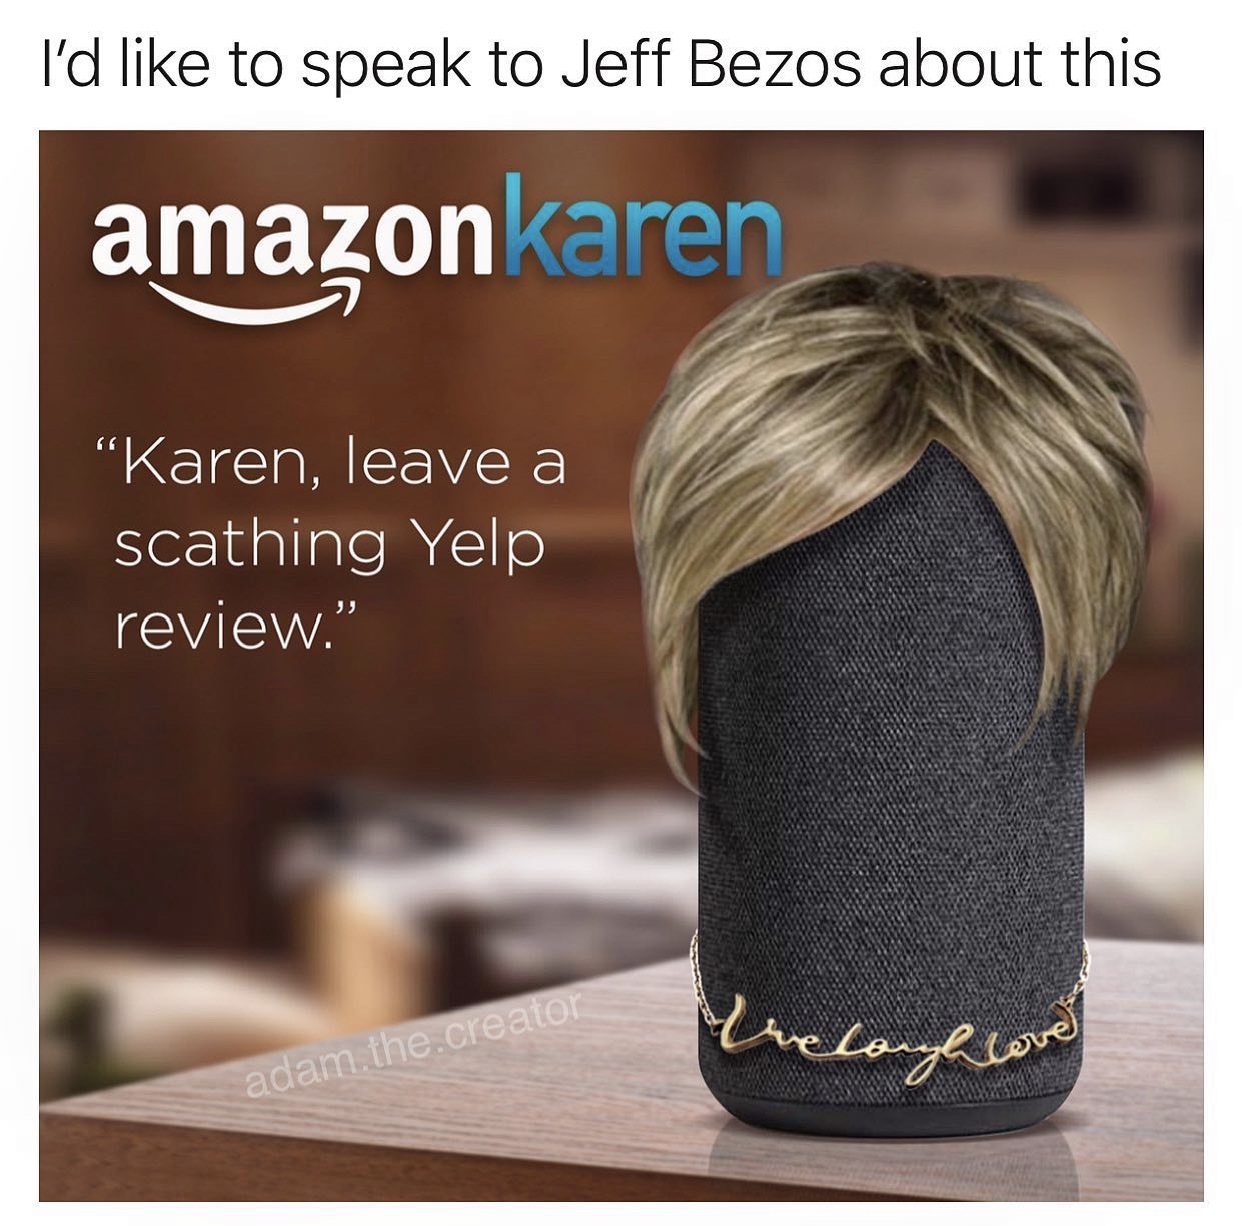 amazon - I'd to speak to Jeff Bezos about this amazonkaren